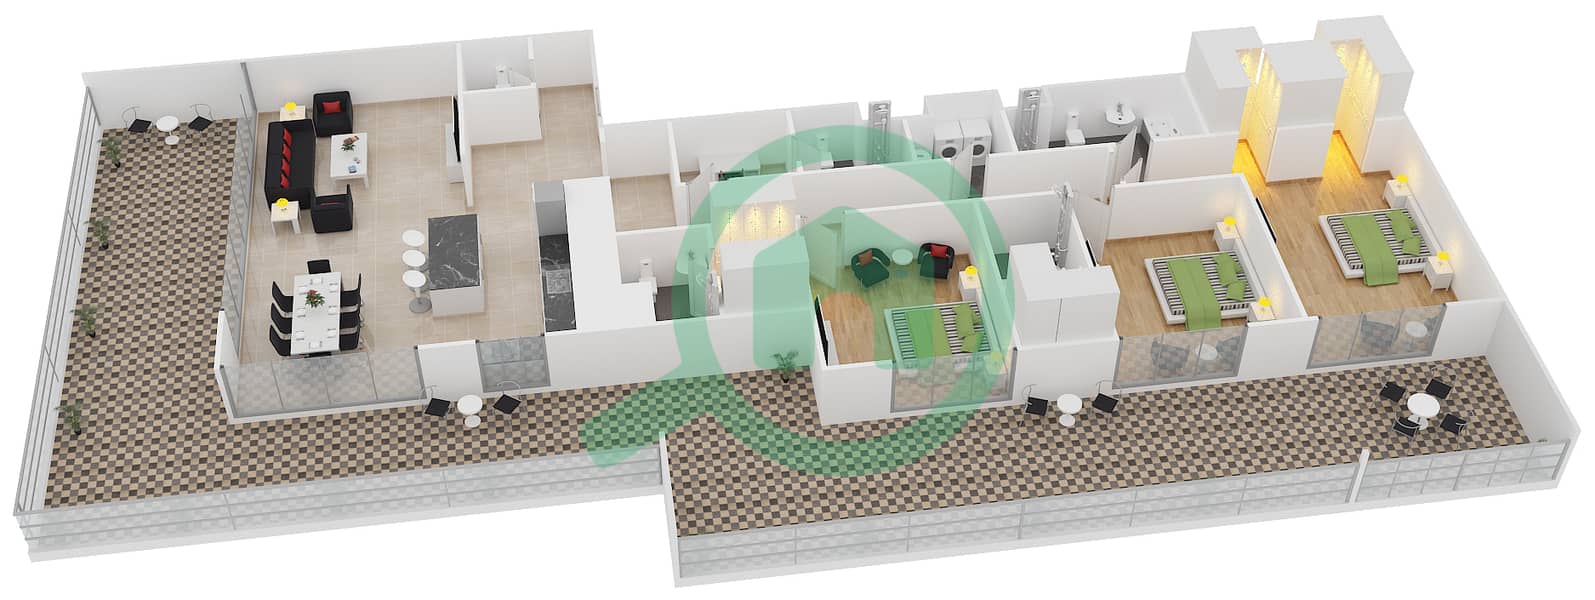 المخططات الطابقية لتصميم النموذج 15 شقة 3 غرف نوم - بلجرافيا interactive3D